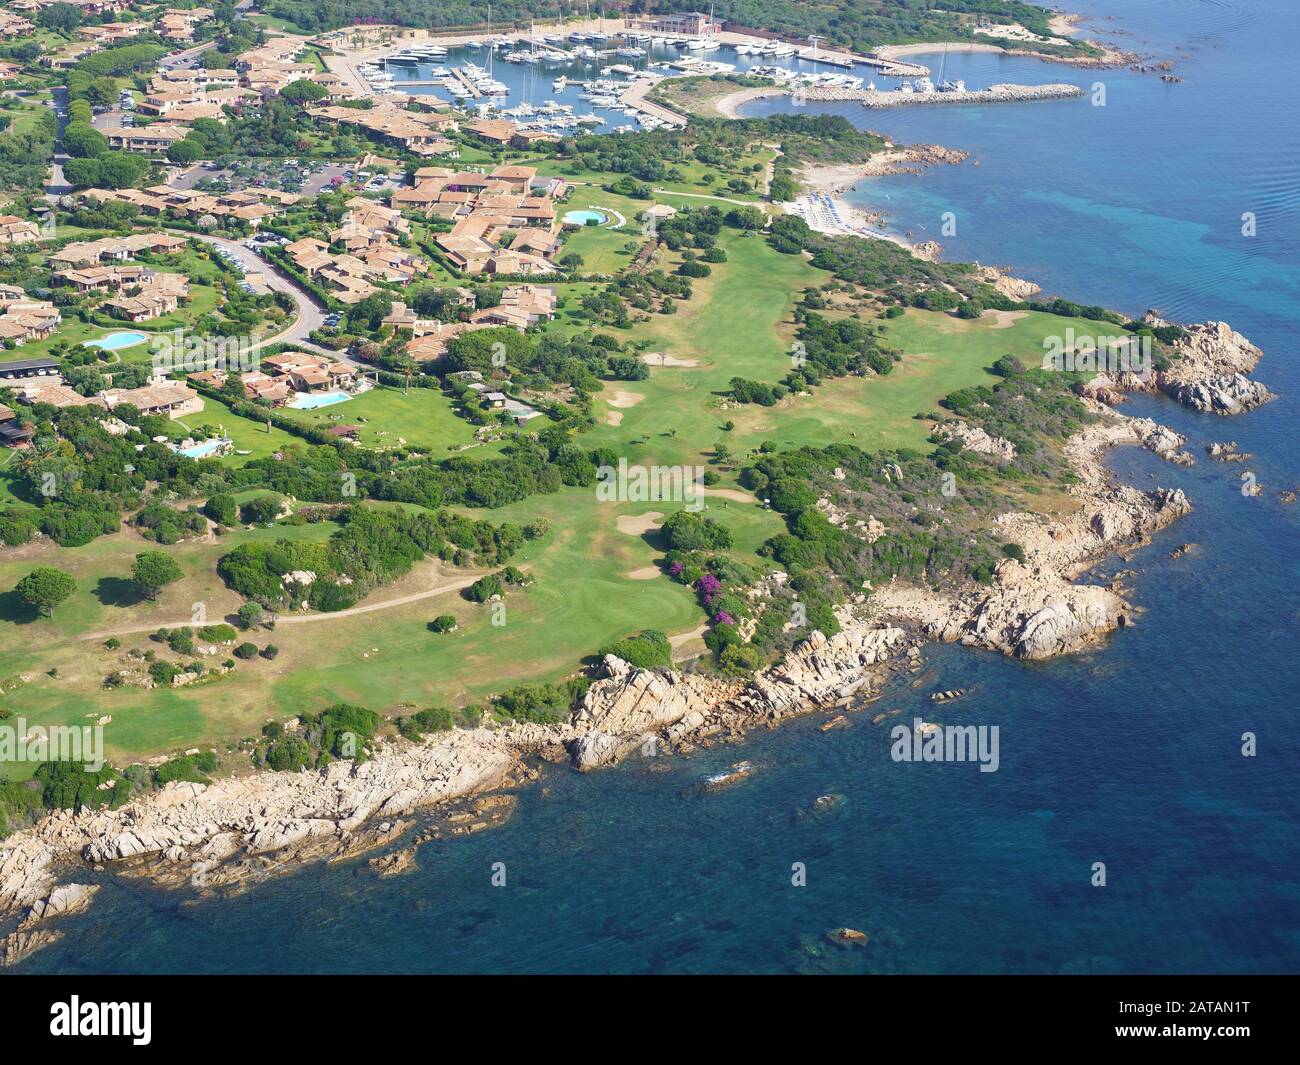 VUE AÉRIENNE.Parcours de golf dans un emplacement pittoresque le long d'une côte rocheuse.Punta Alcia, province de Sassari, Sardaigne, Italie. Banque D'Images